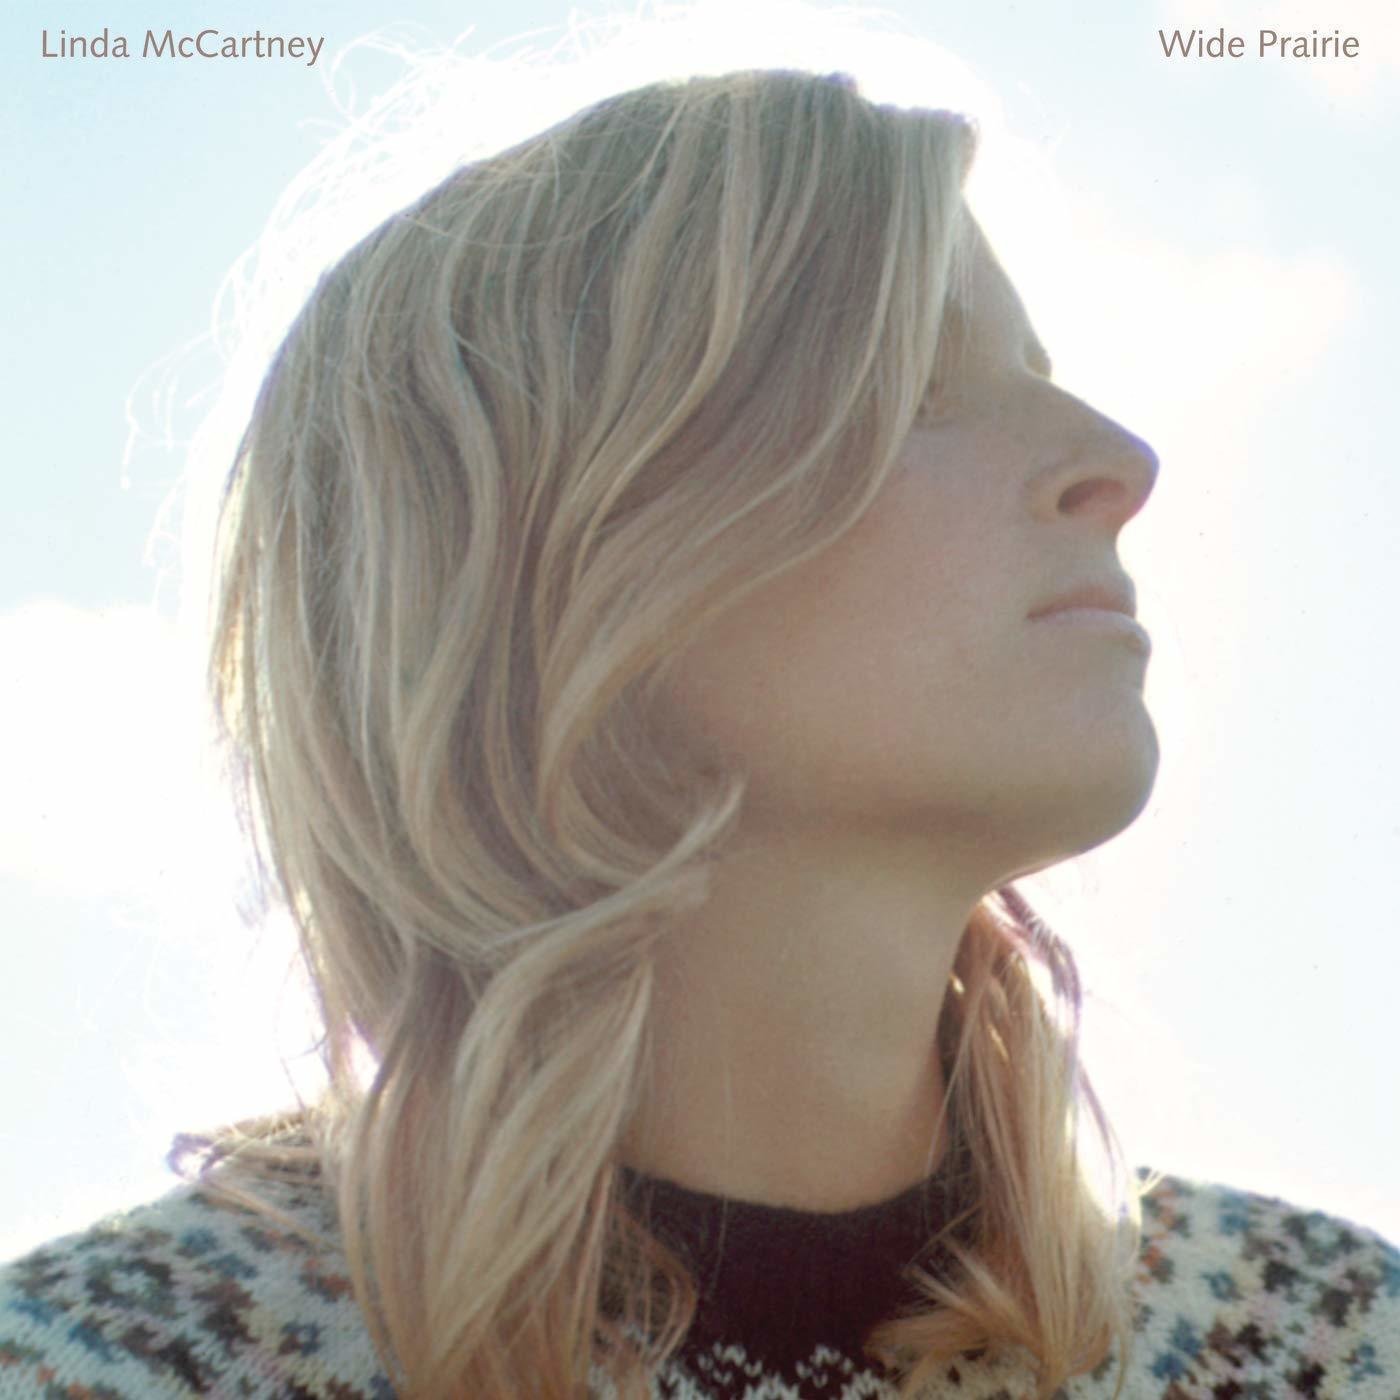 LP Linda McCartney - Wide Prairie (LP)